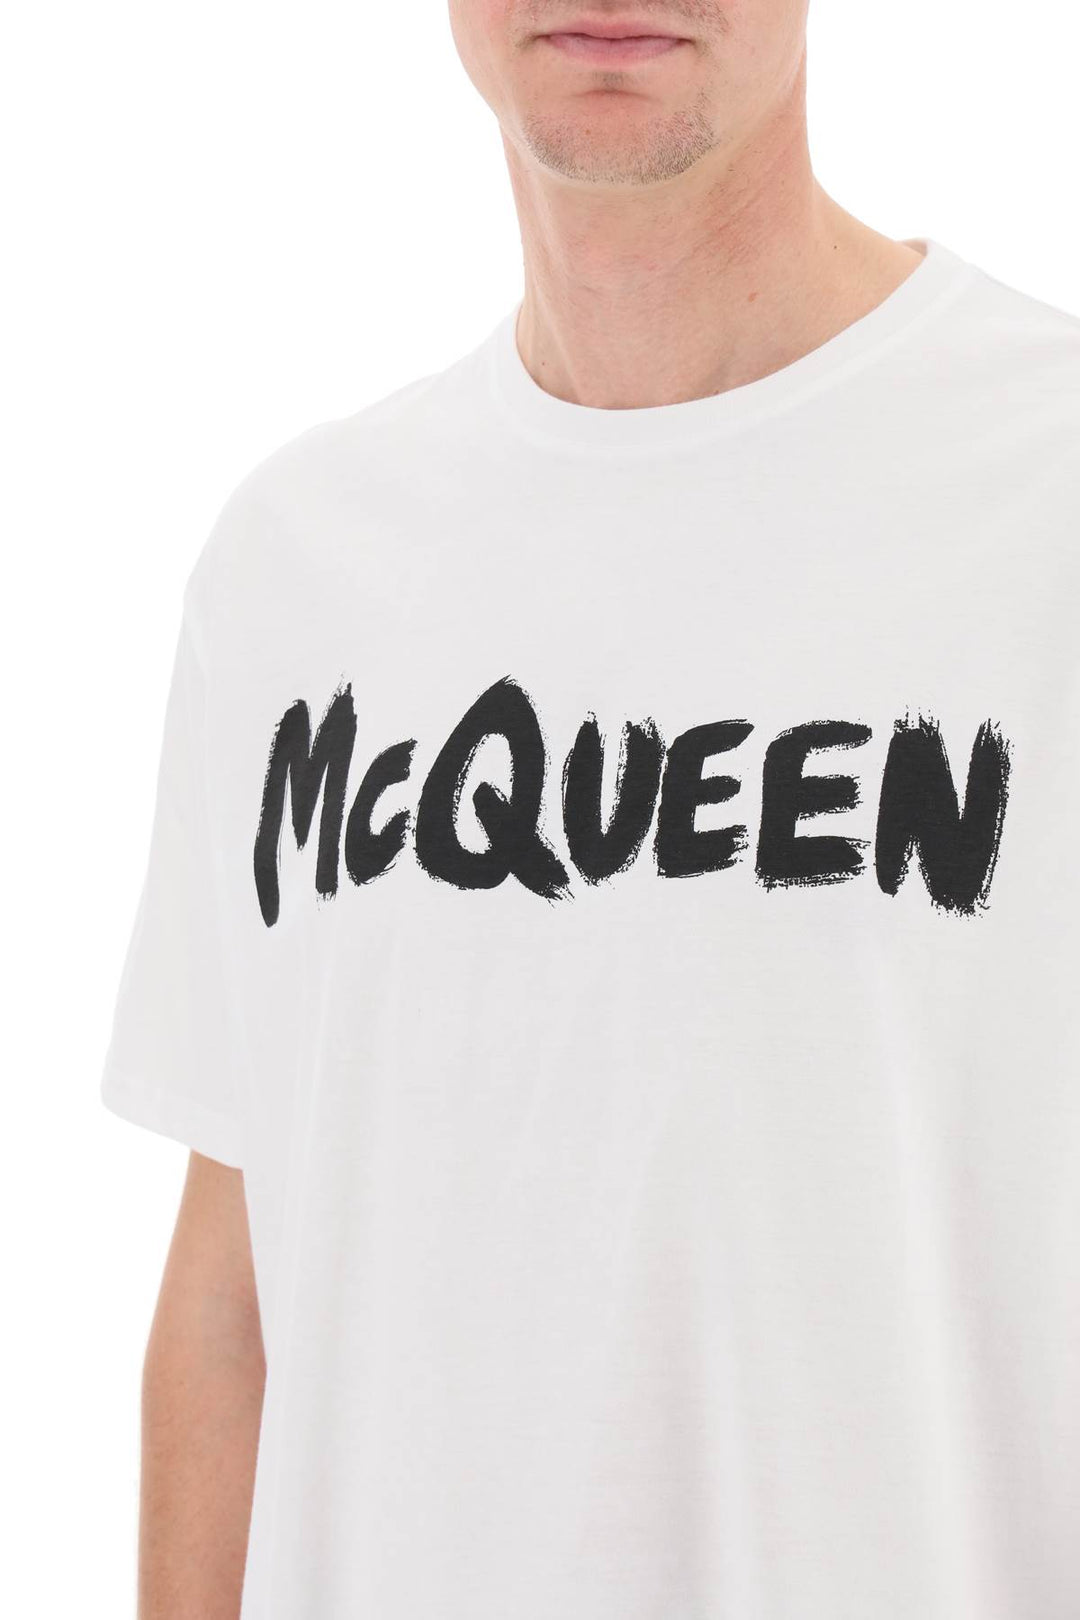 Alexander Mcqueen Mcqueen Graffiti T Shirt   White